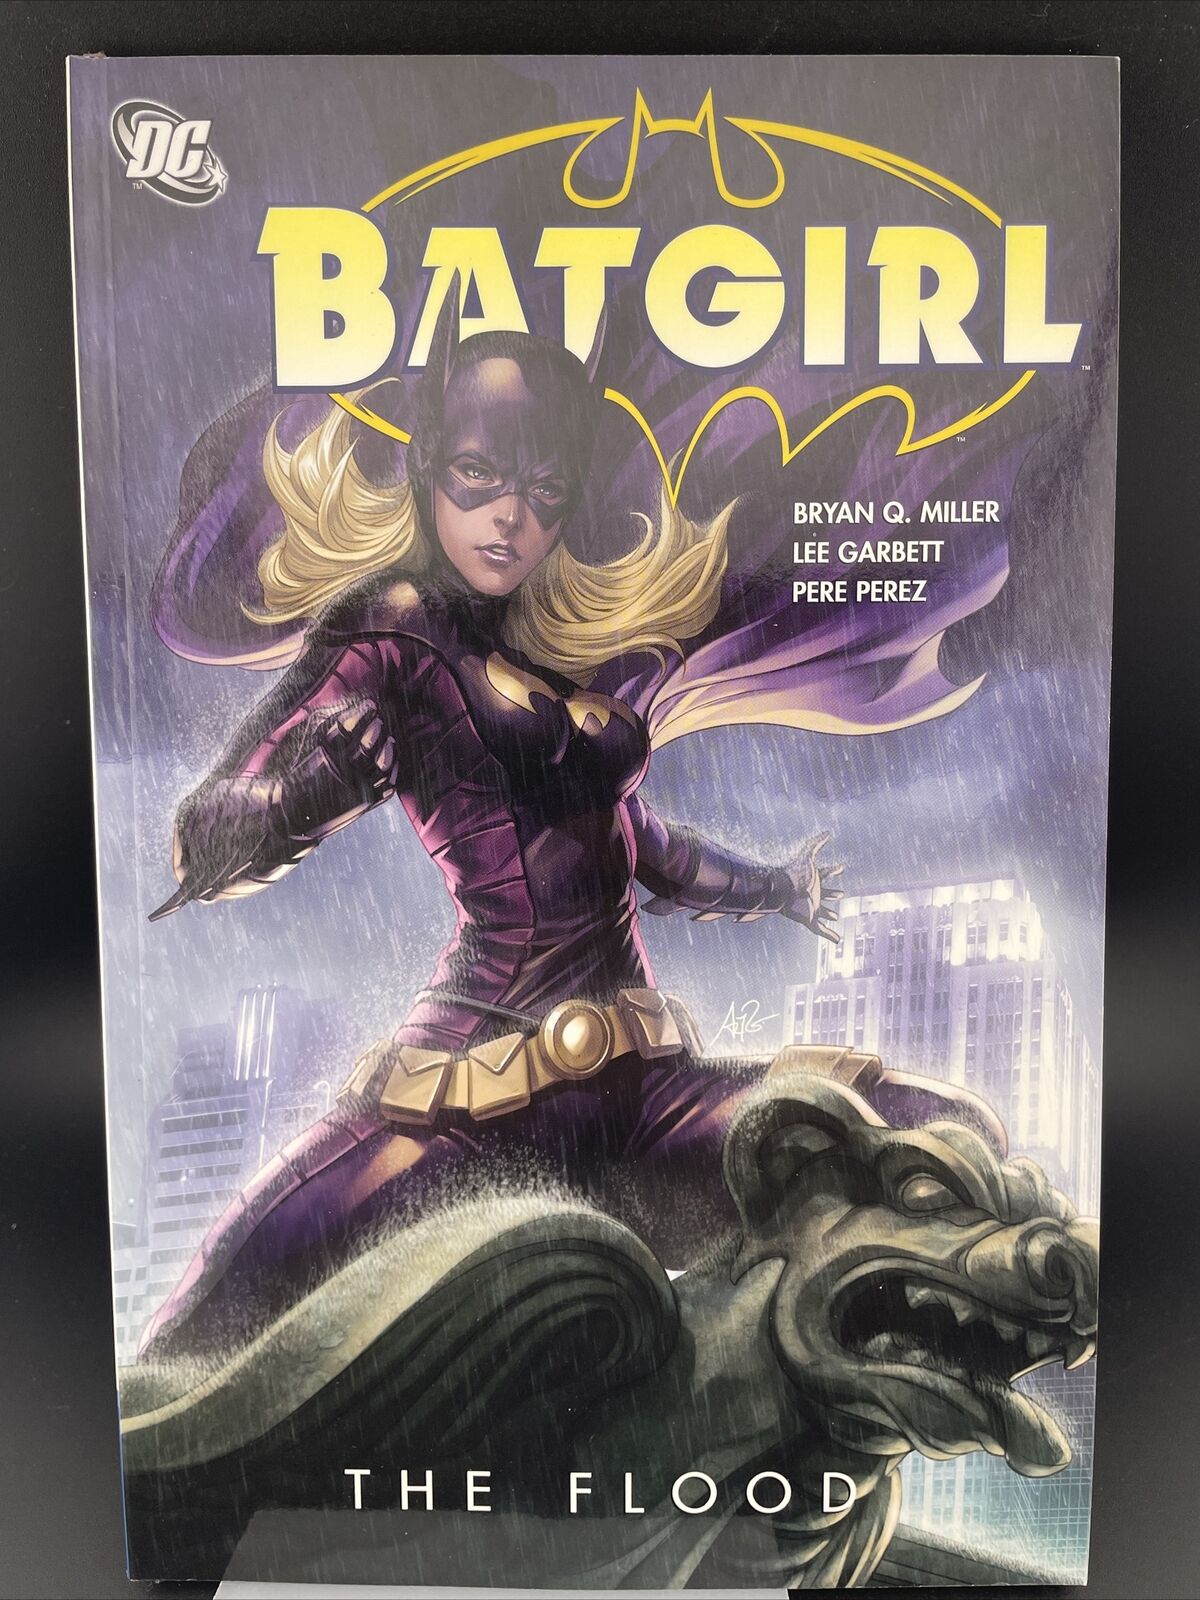 Batgirl: The Flood (DC Comics, July 2011)